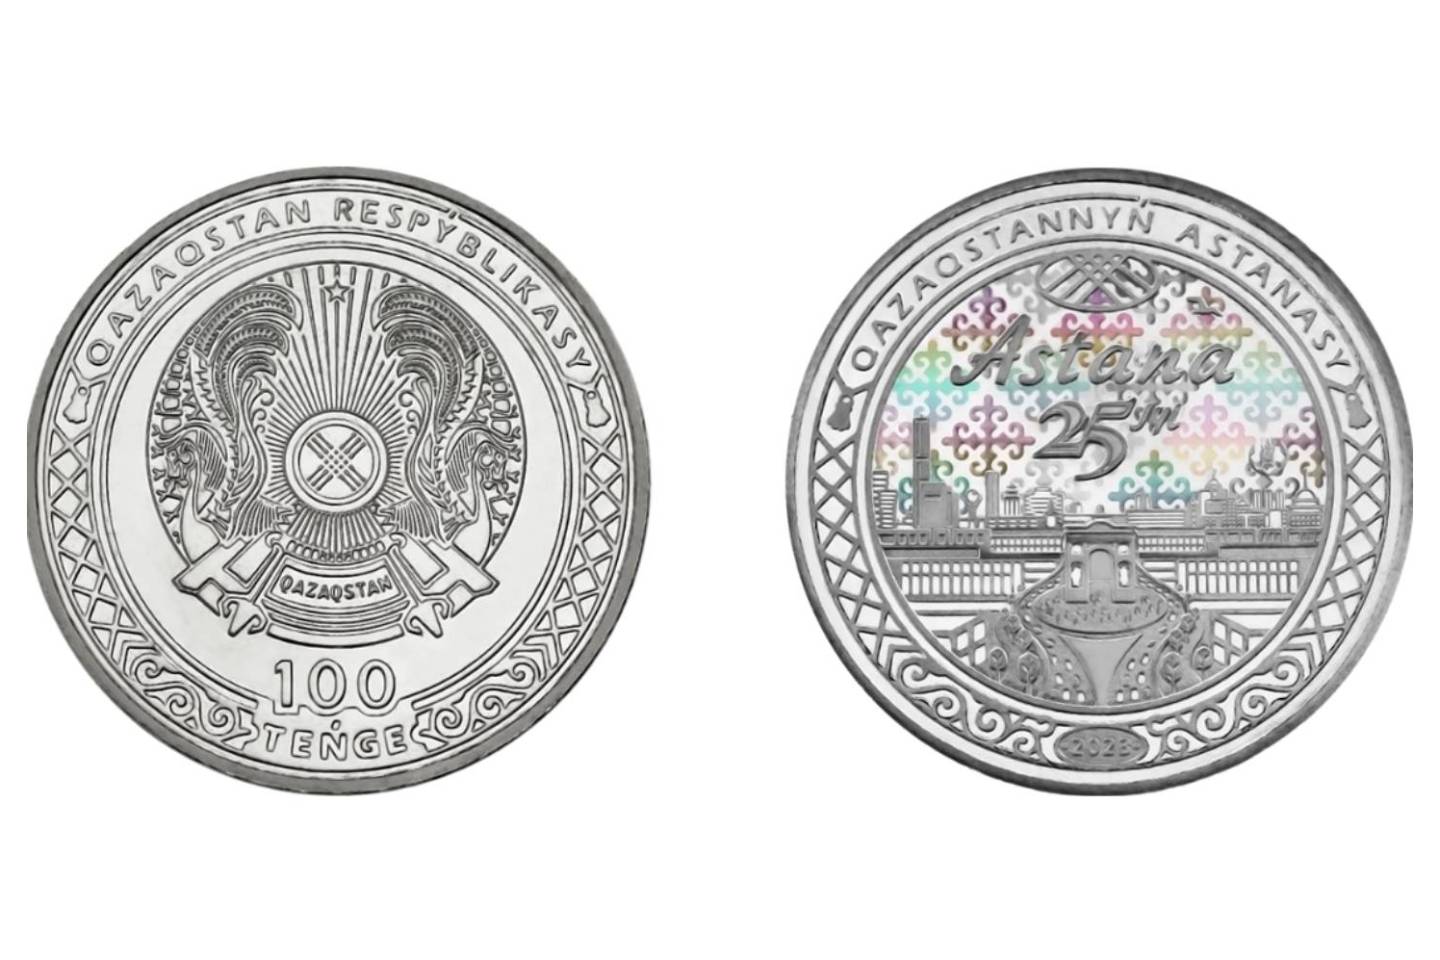 Новости Казахстана / Общество в Казахстане / Коллекционные монеты в честь Дня столицы выпустили в Казахстане